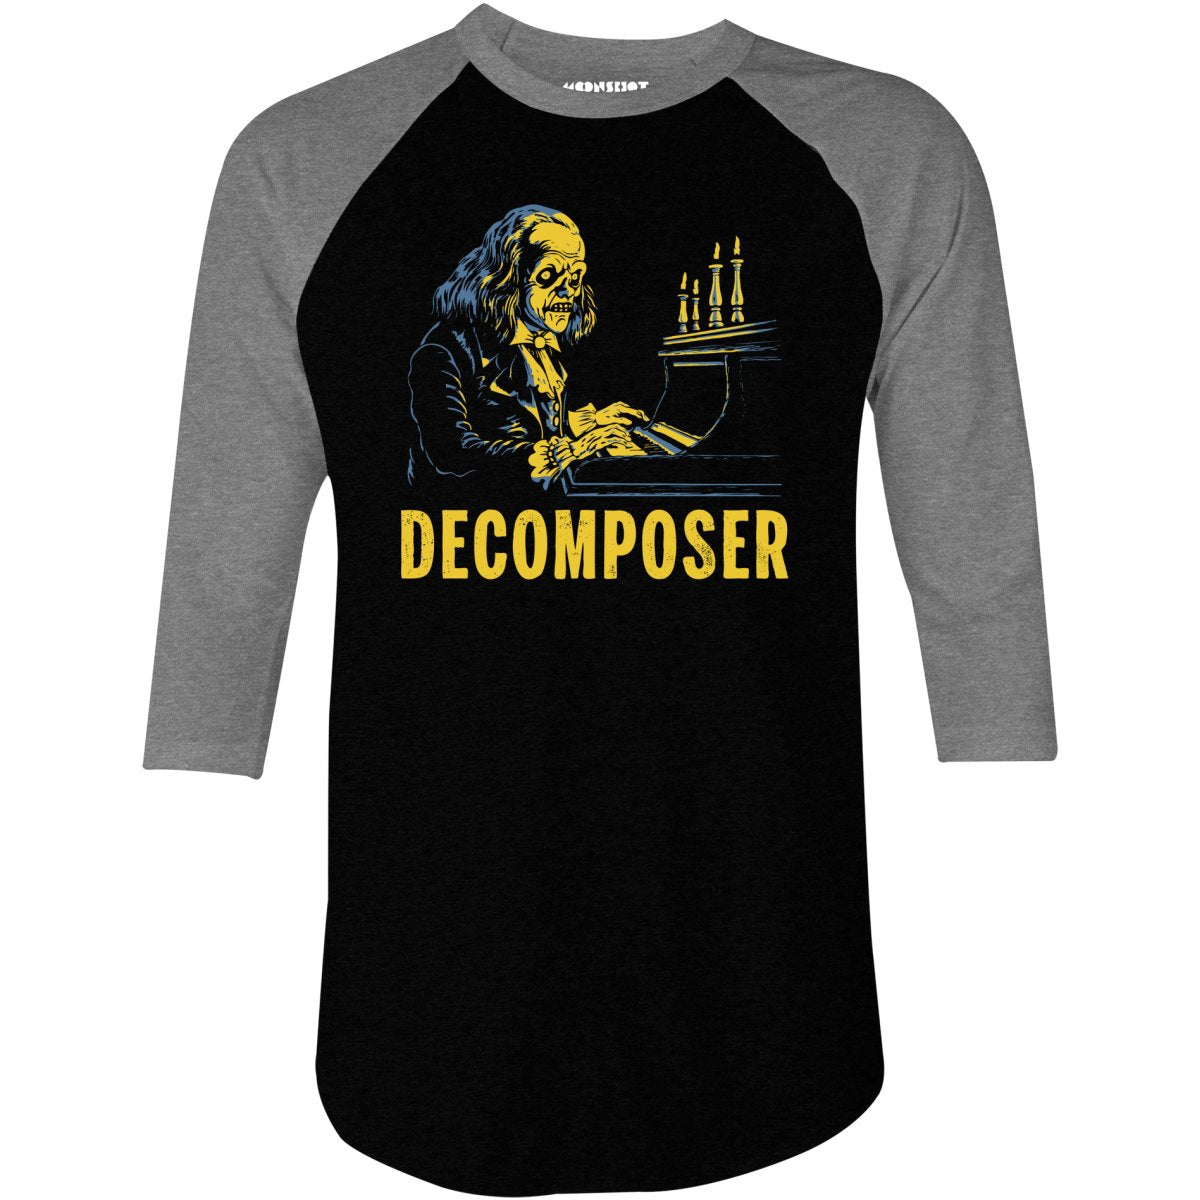 Decomposer - 3/4 Sleeve Raglan T-Shirt